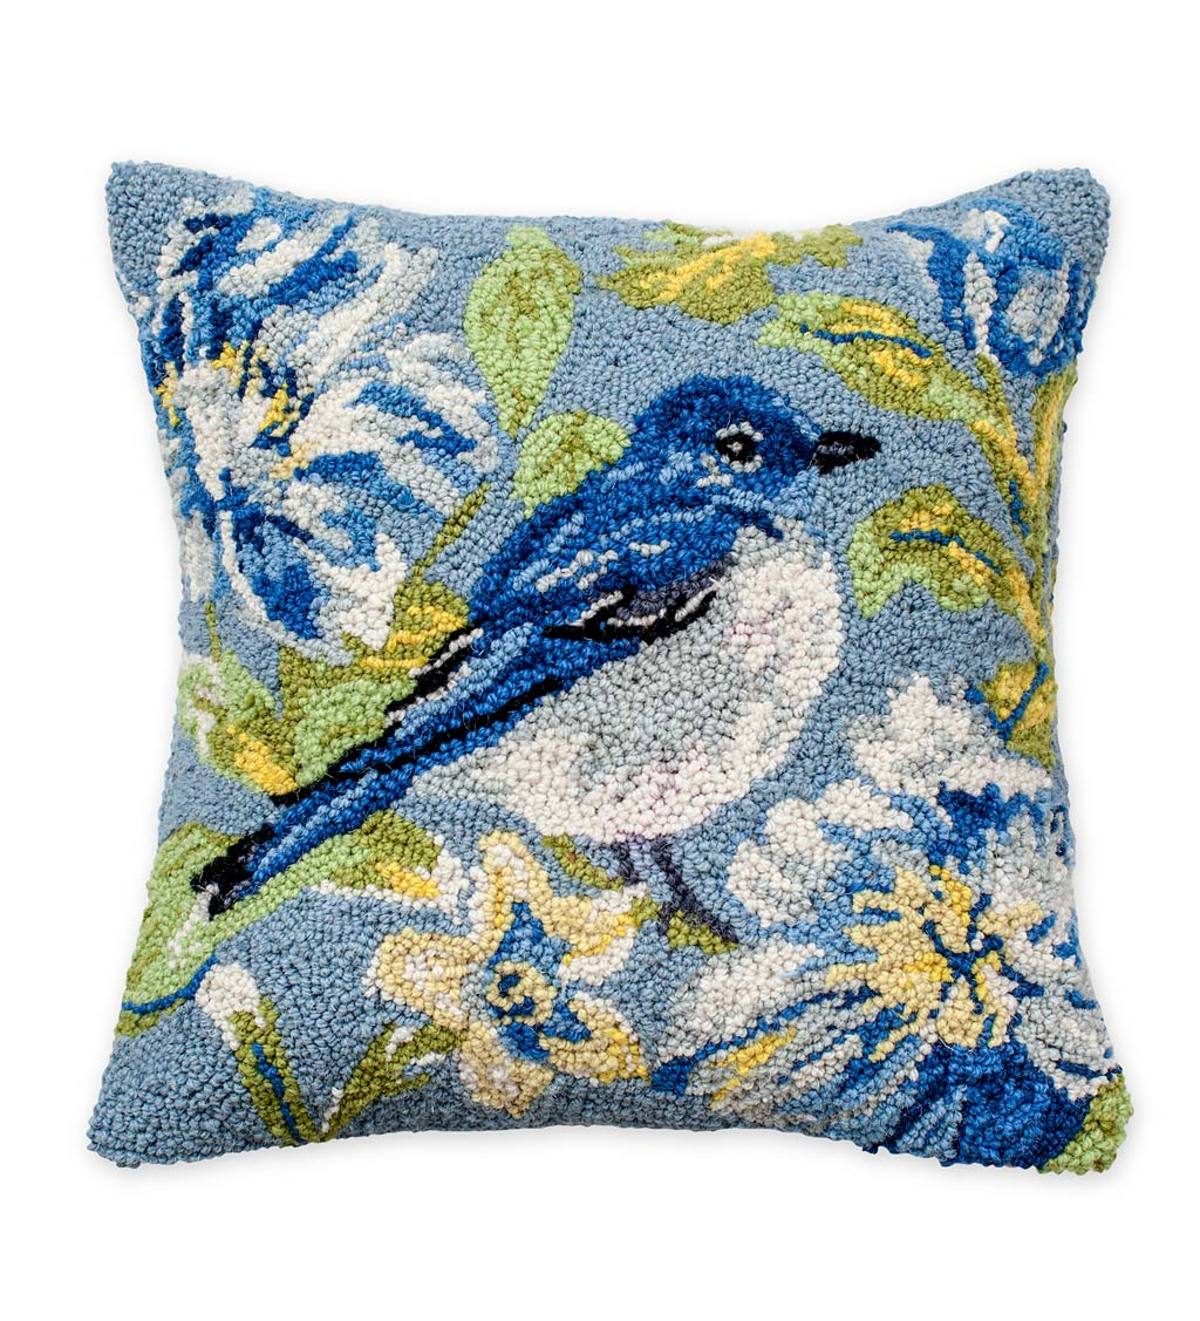 Hand-Hooked Wool Bluebird Garden Throw Pillow